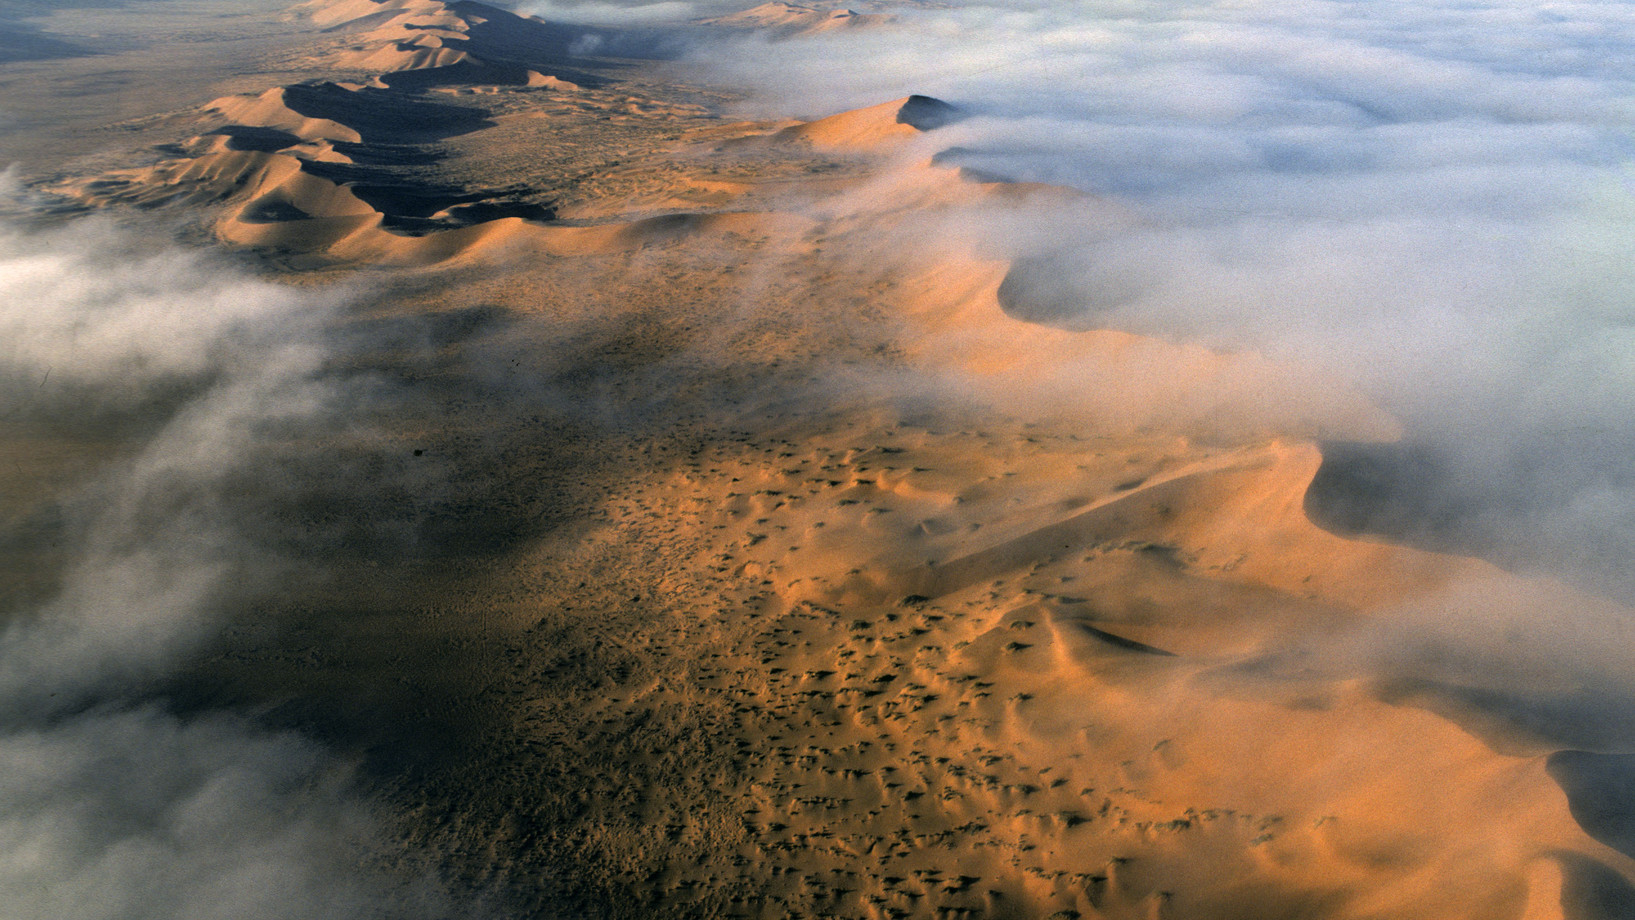  Im vergangenen Juni zeichnete die Unesco die Namibwüste als 193. Juwel des Weltnaturerbes aus. Offiziell heisst die neue Welterbestätte „Namib Sand Sea“, aber die Namib hat neben den spektakulären Dünenfeldern auch Kiesgebiete, Felsberge, Küstenebenen, ja sogar eine Küstenlagune.

Sie erstreckt sich, fast ausschliesslich auf namibischem Staatsgebiet, entlang 1300 Kilometer Küste von Südangola bis zum Oranje Fluss an der Grenze zu Südafrika. Die knochentrockene Küstenwüste wartet mit zahlreichen Rekorden…